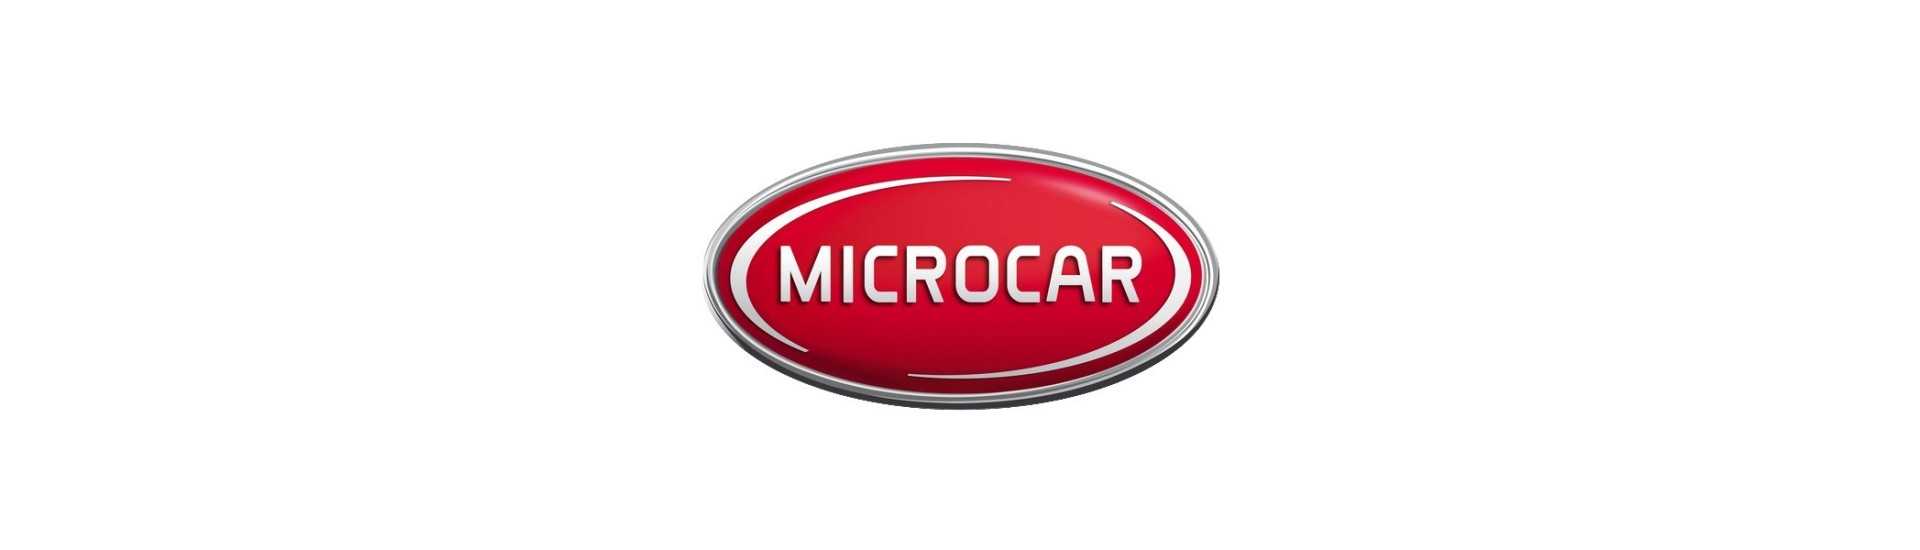 Chasis al mejor precio para un coche sin carnet Microcar